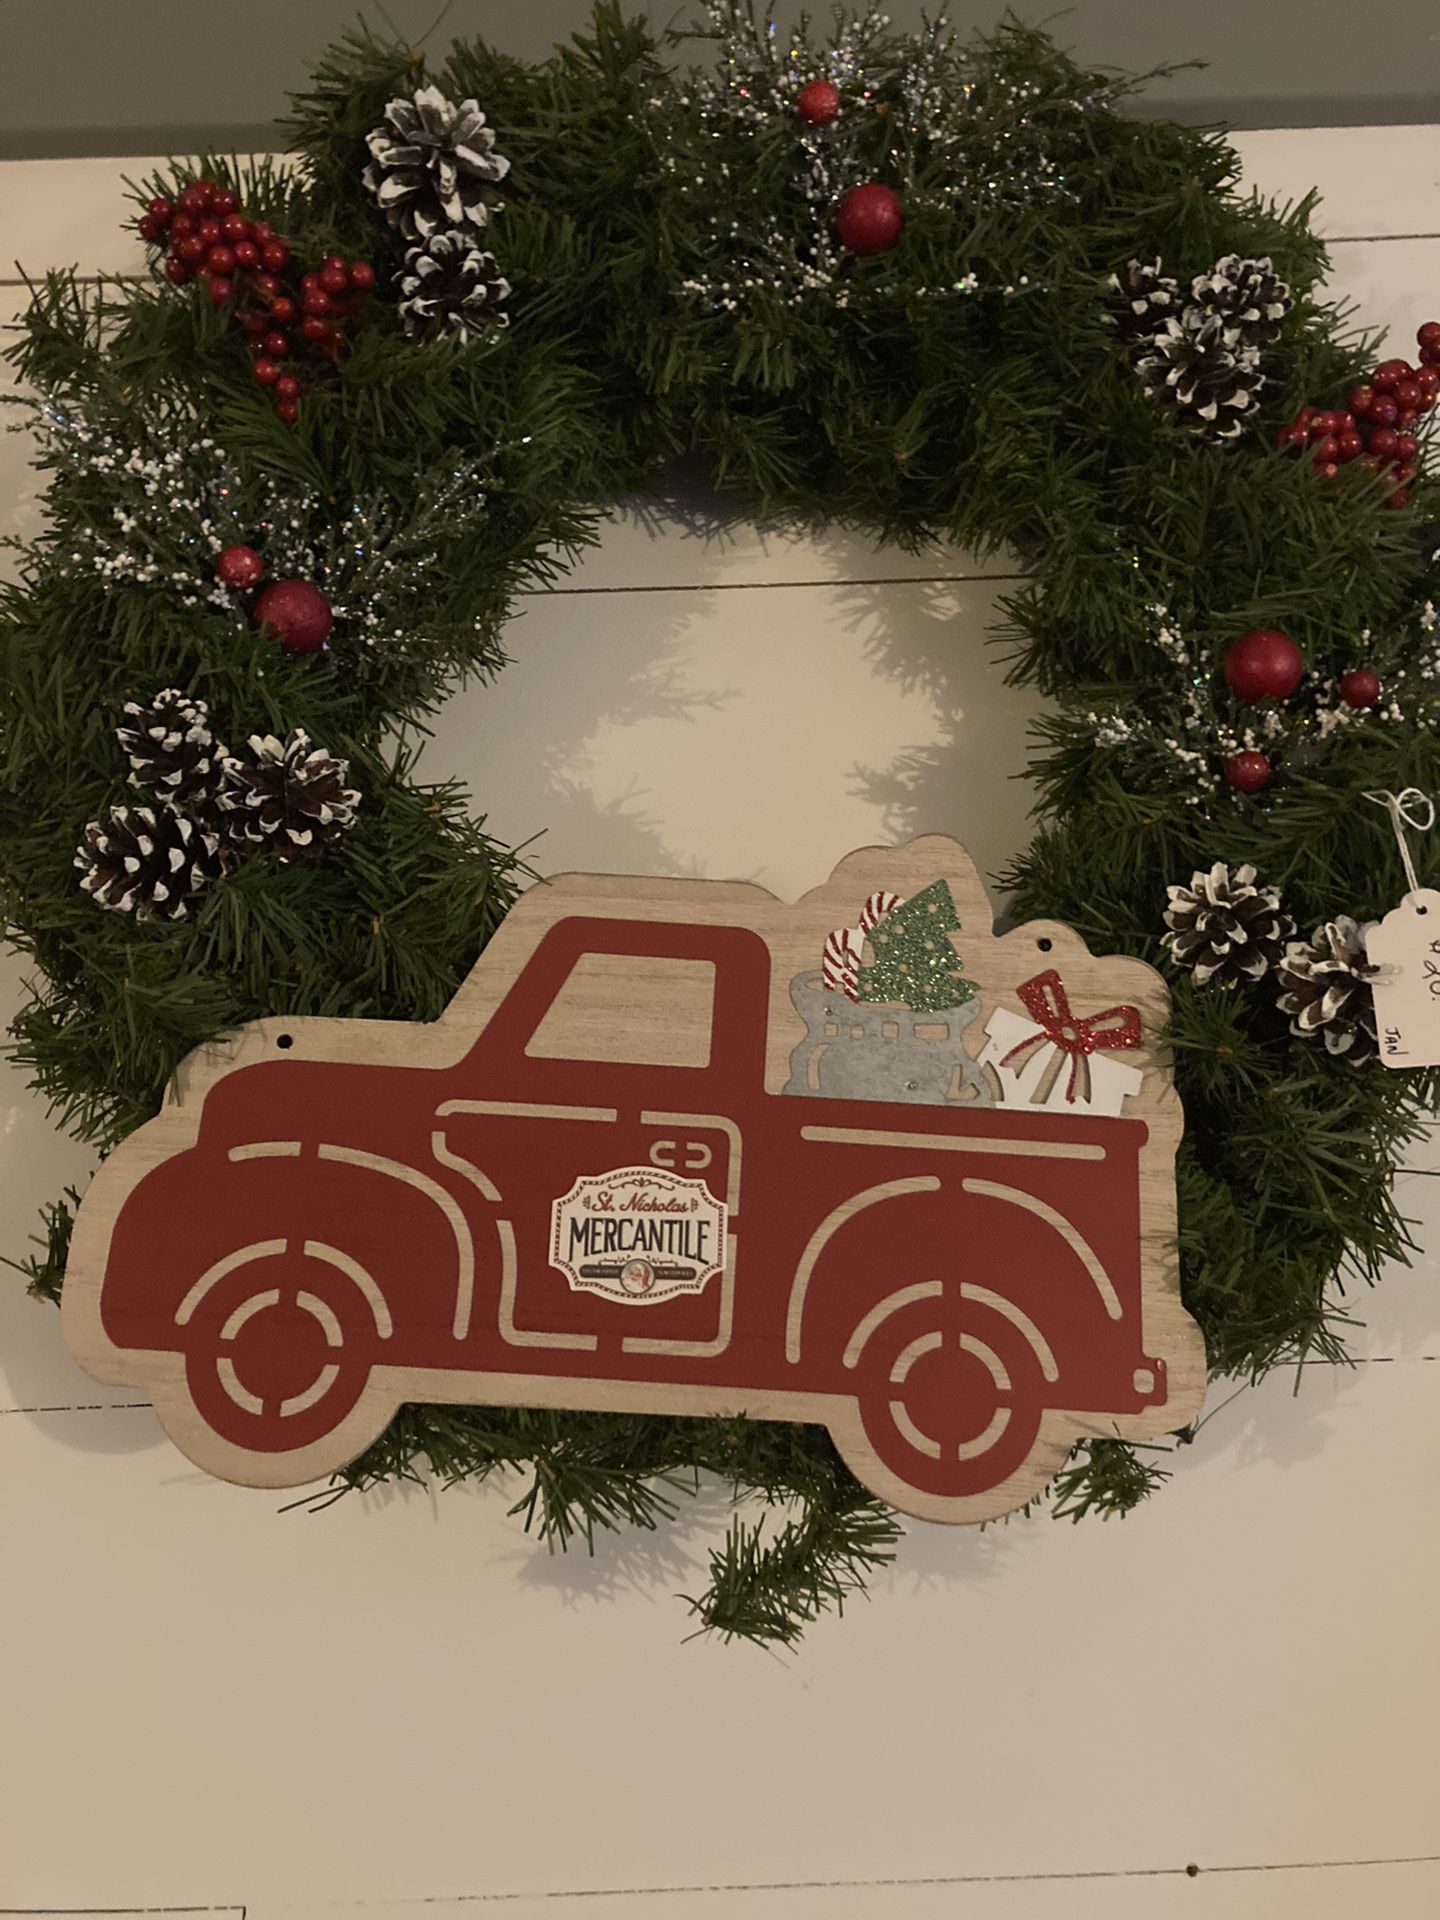 Cute red truck wreath